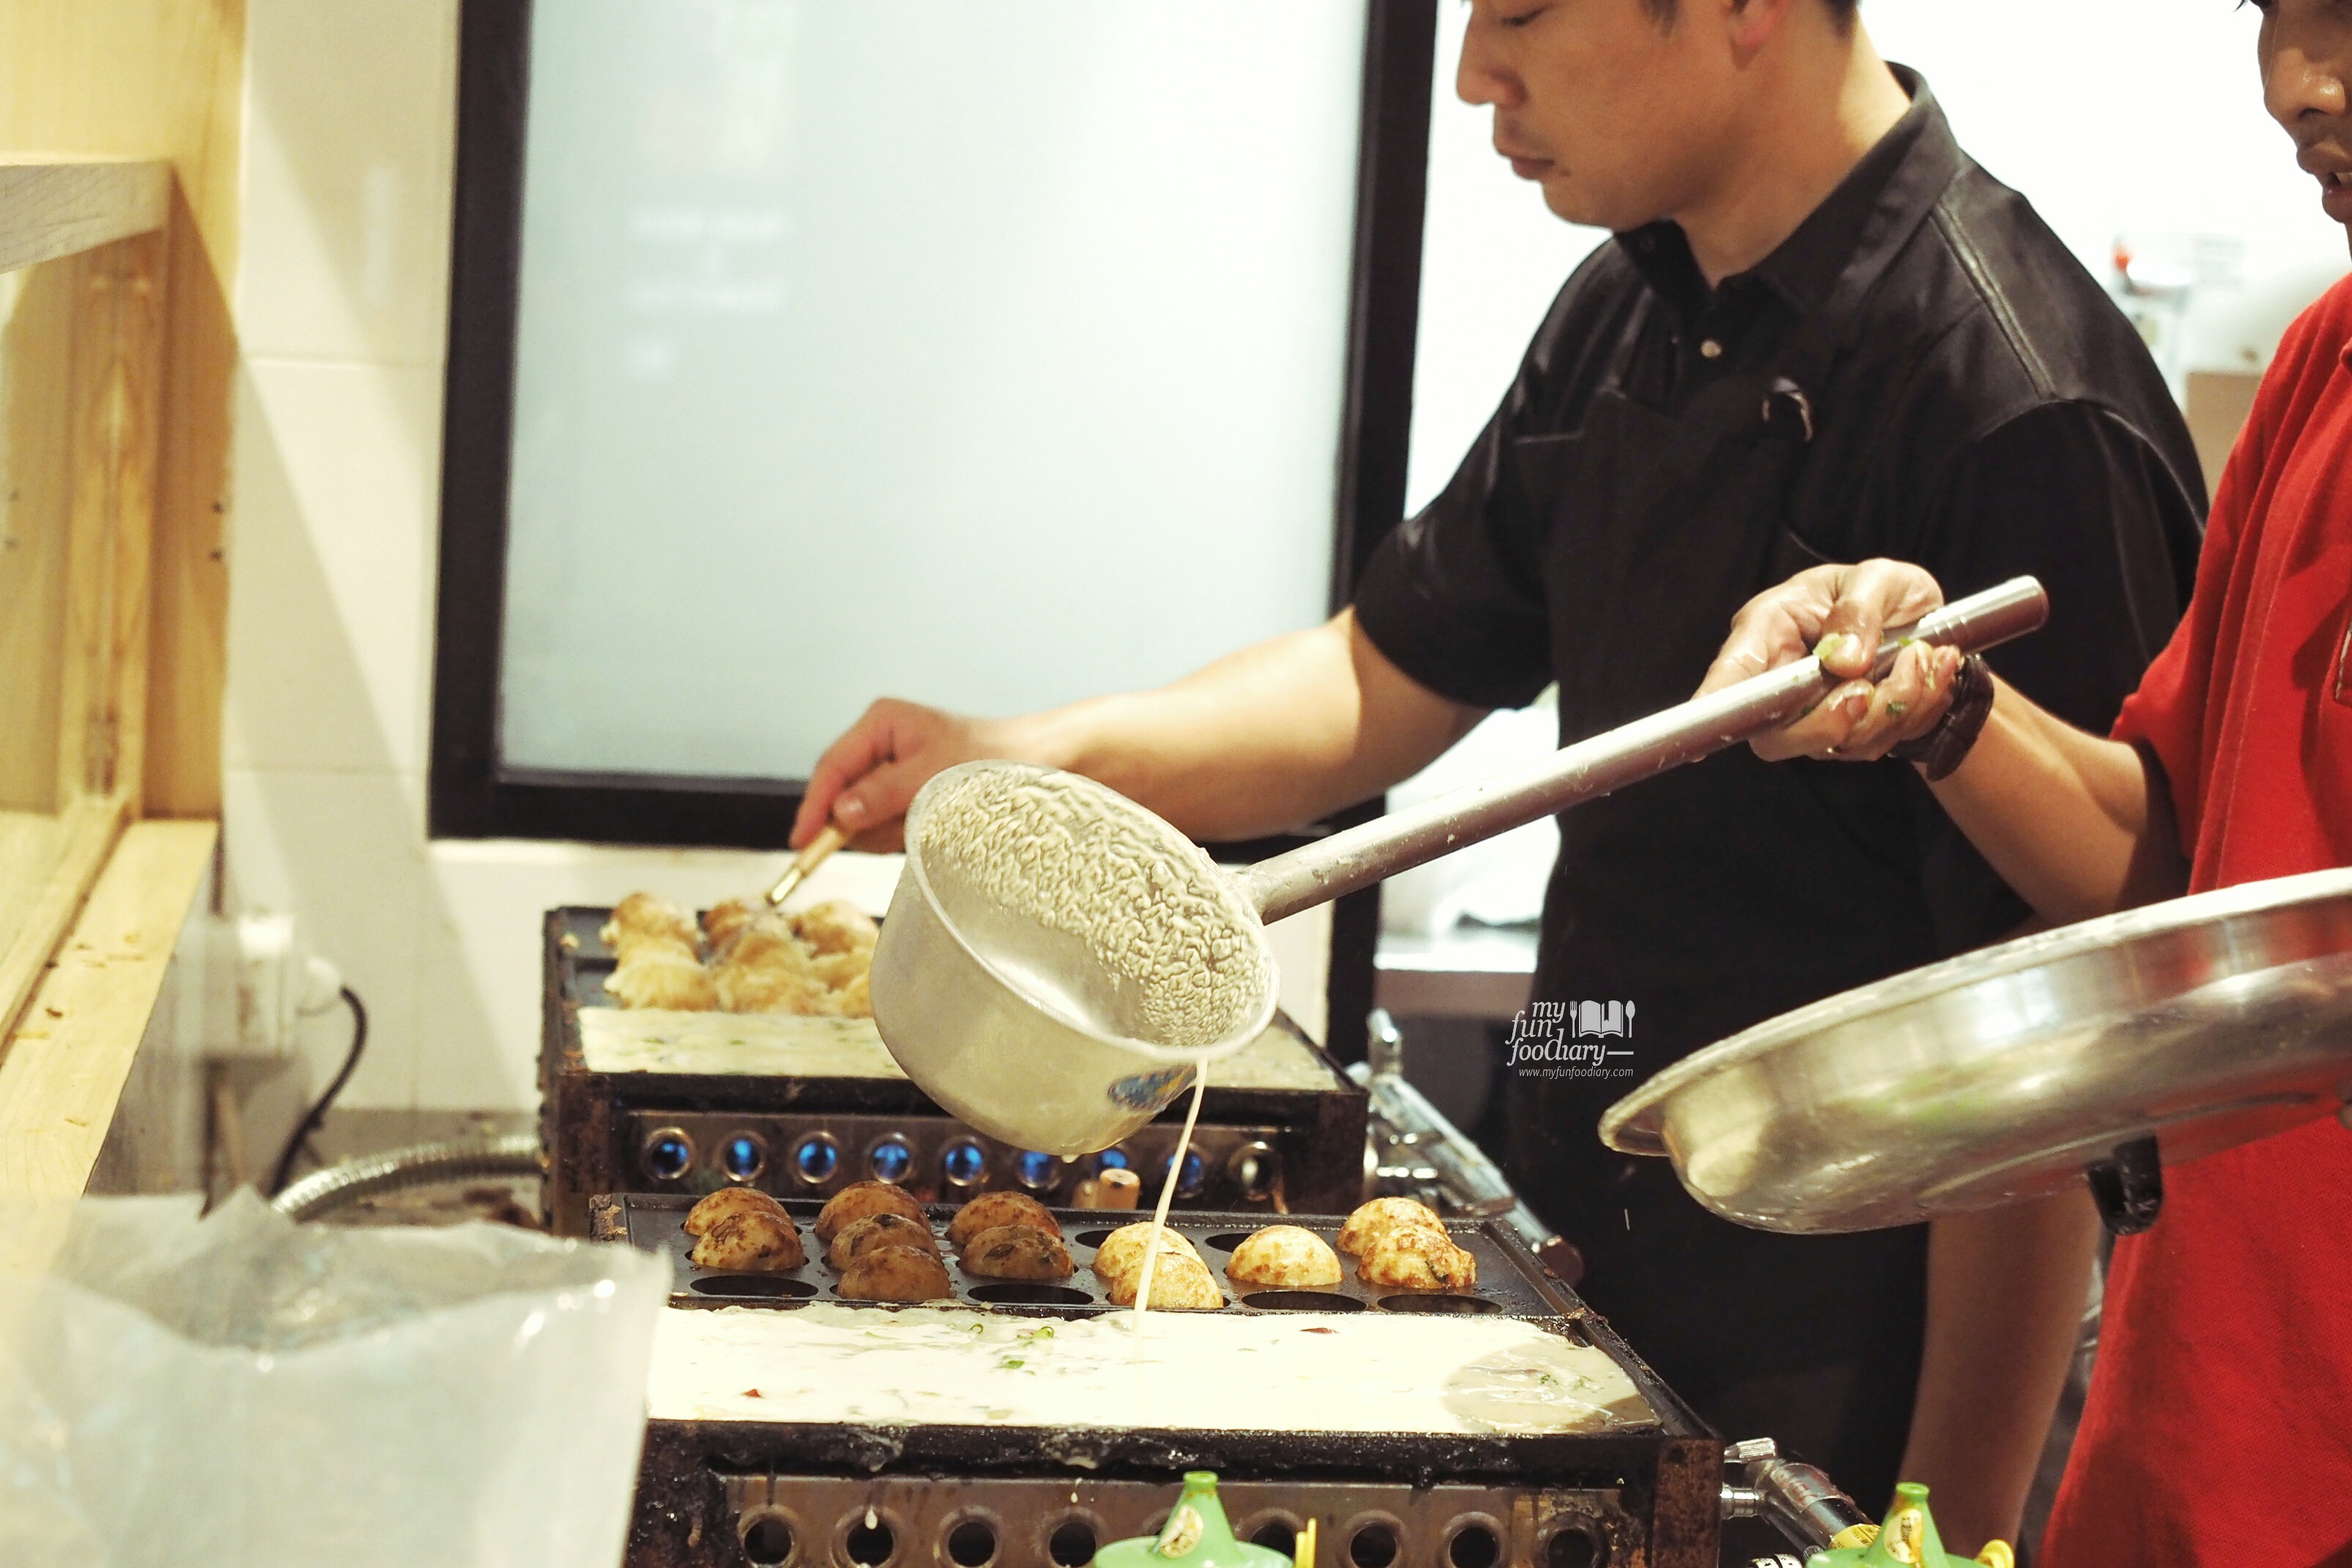 Takoyaki Making at Yamatoya at The Food Culture AEON Mall by Myfunfoodiary